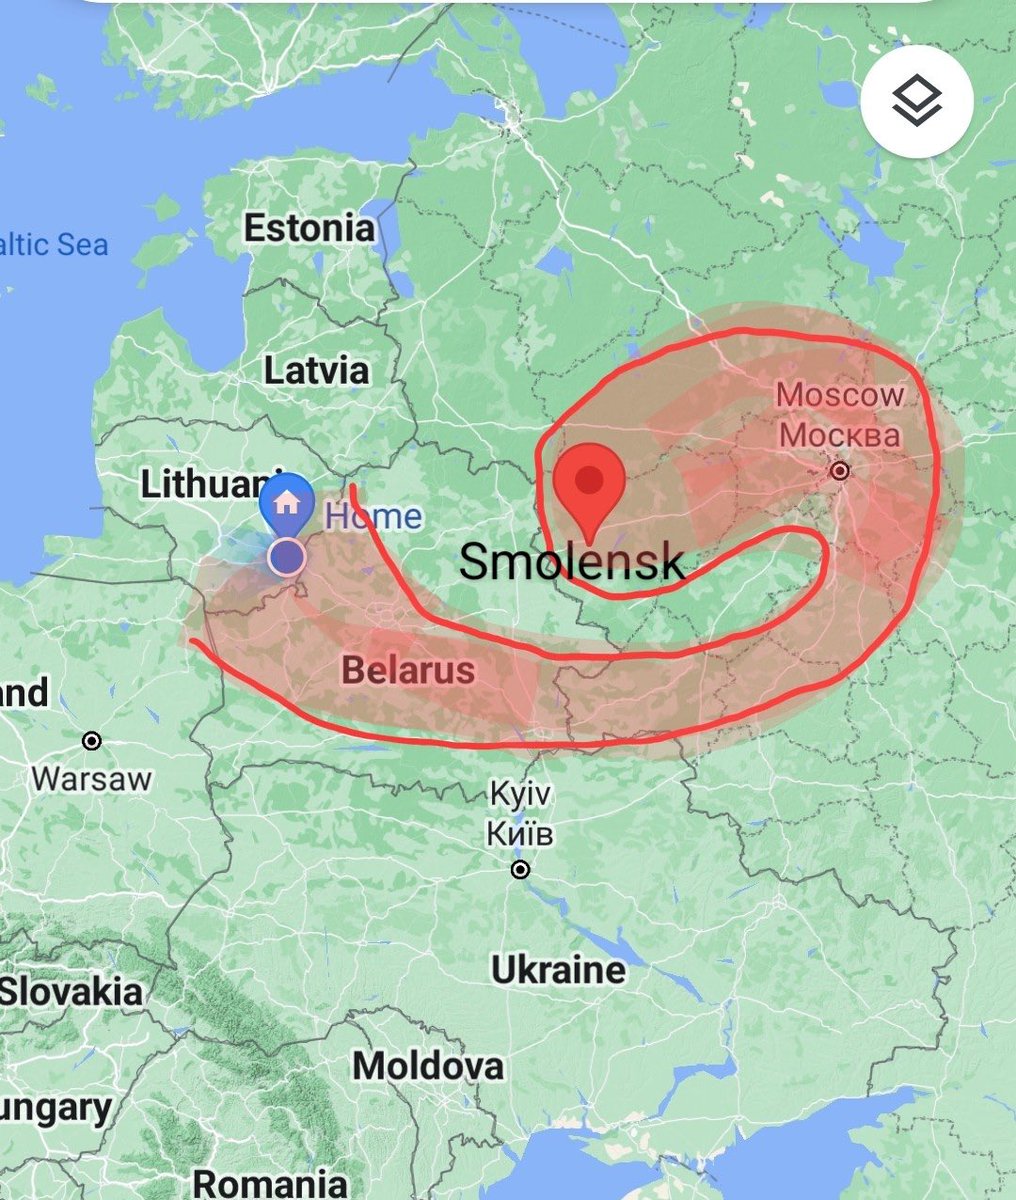 Matas Maldeikis adındaki litvanya milletvekili uçmuş..:)

'Rusya'nın Kaliningrad'daki iddialarına yanıt olarak, bu kara koridoru aracılığıyla geleneksel Litvanya toprakları Smolensk'e tam erişim talep ediyoruz.' :))  olur buyur..